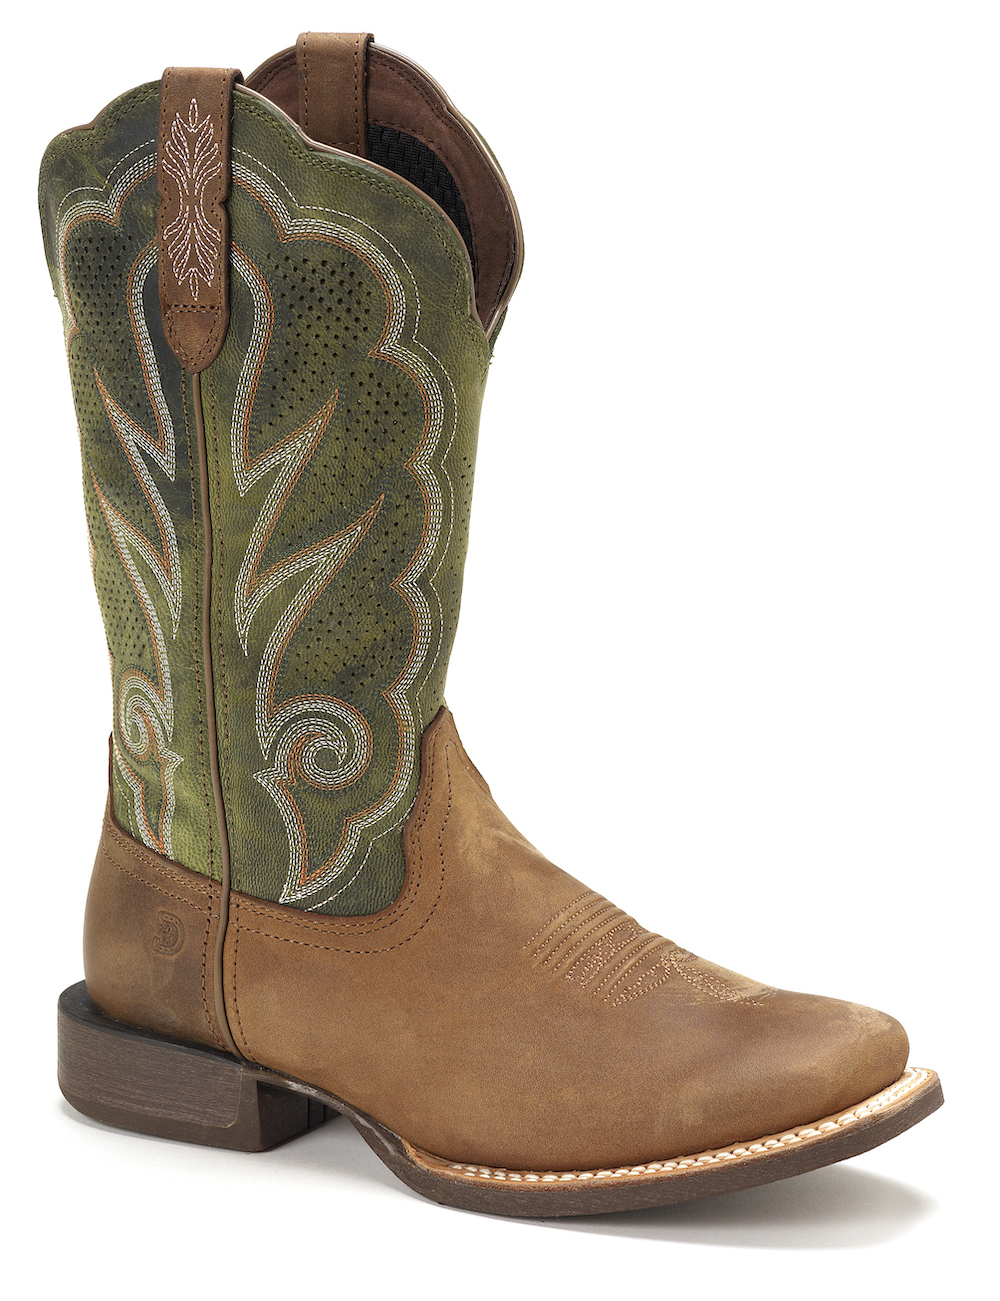 dress barn wide calf boots